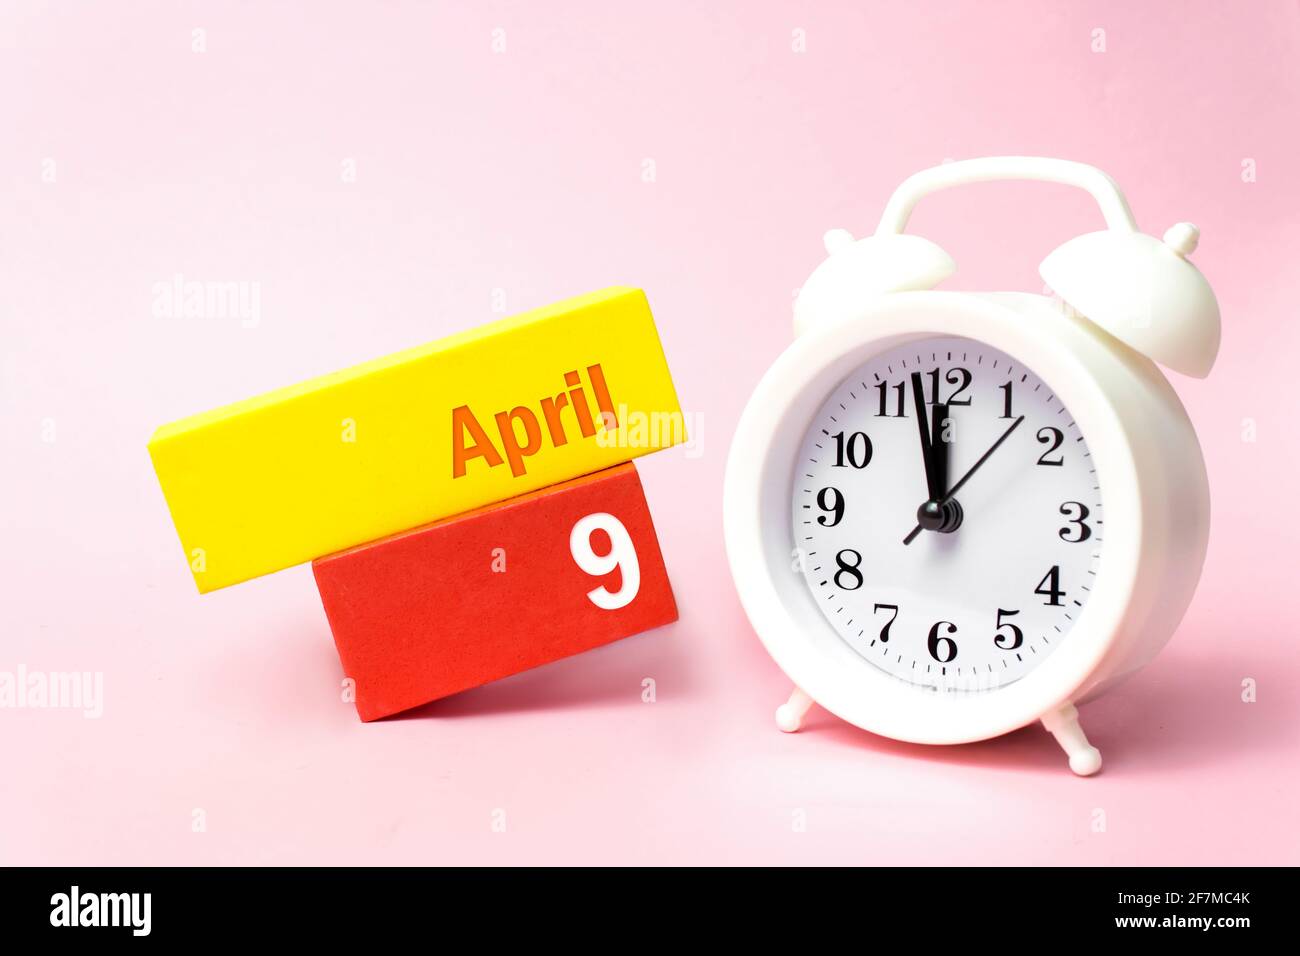 9 avril. Jour 9 du mois, date du calendrier. Réveil blanc sur fond rose pastel. Concept du mois de printemps, du jour de l'année Banque D'Images